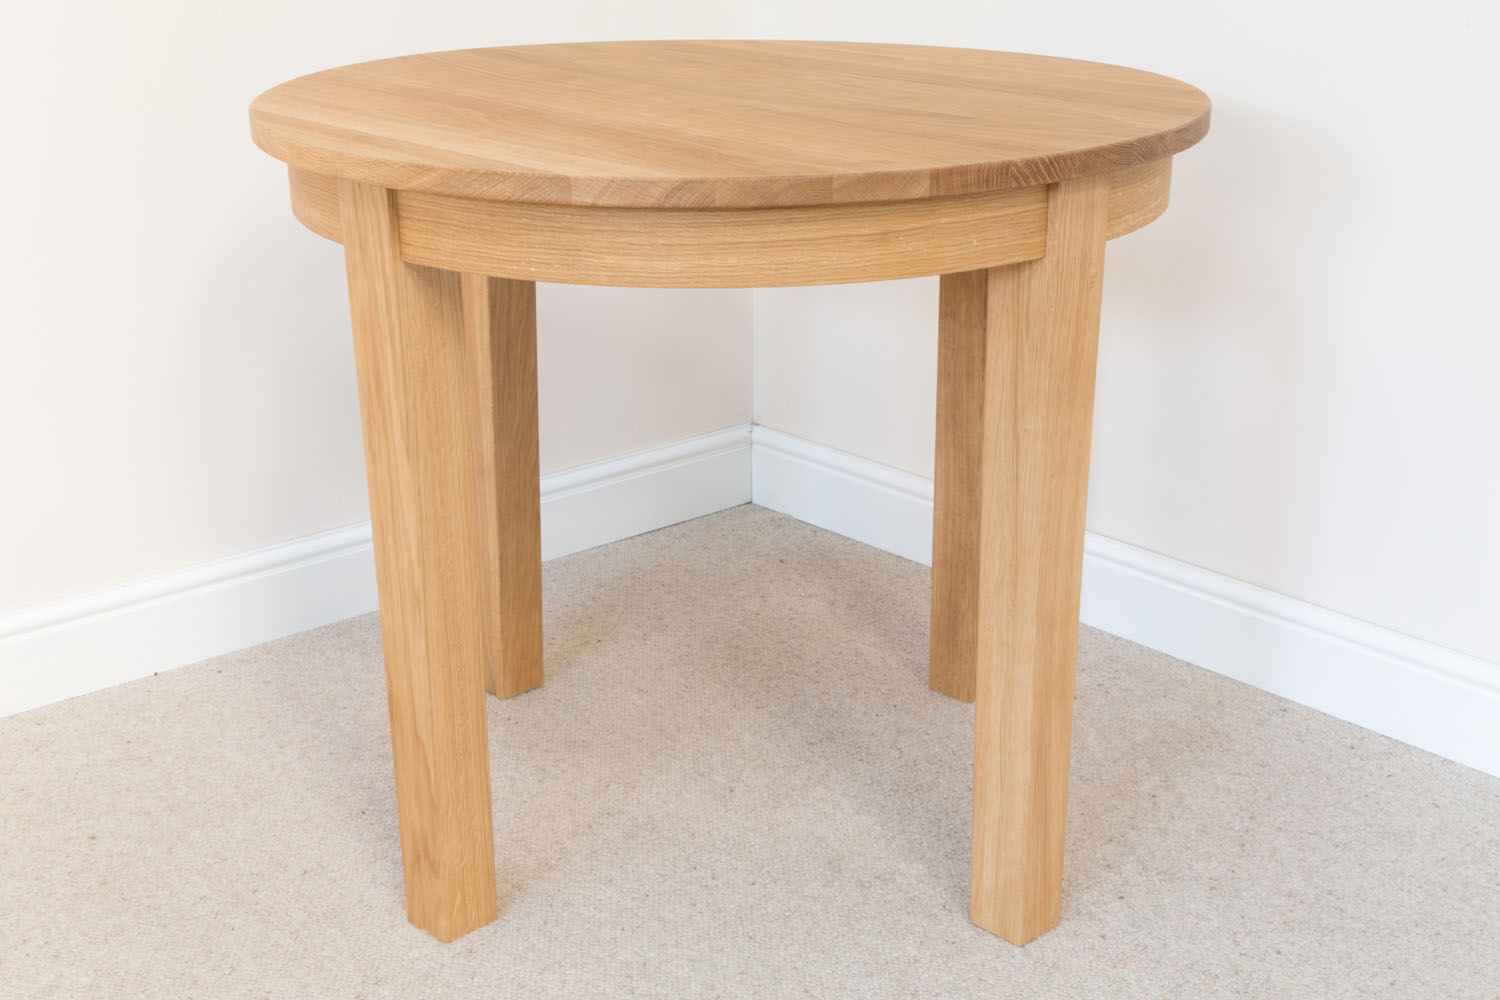 Столик из дерева круглый. Круглый деревянный стол. Круглый столик из дерева. Столик круглый маленький. Круглая столешница для стола.